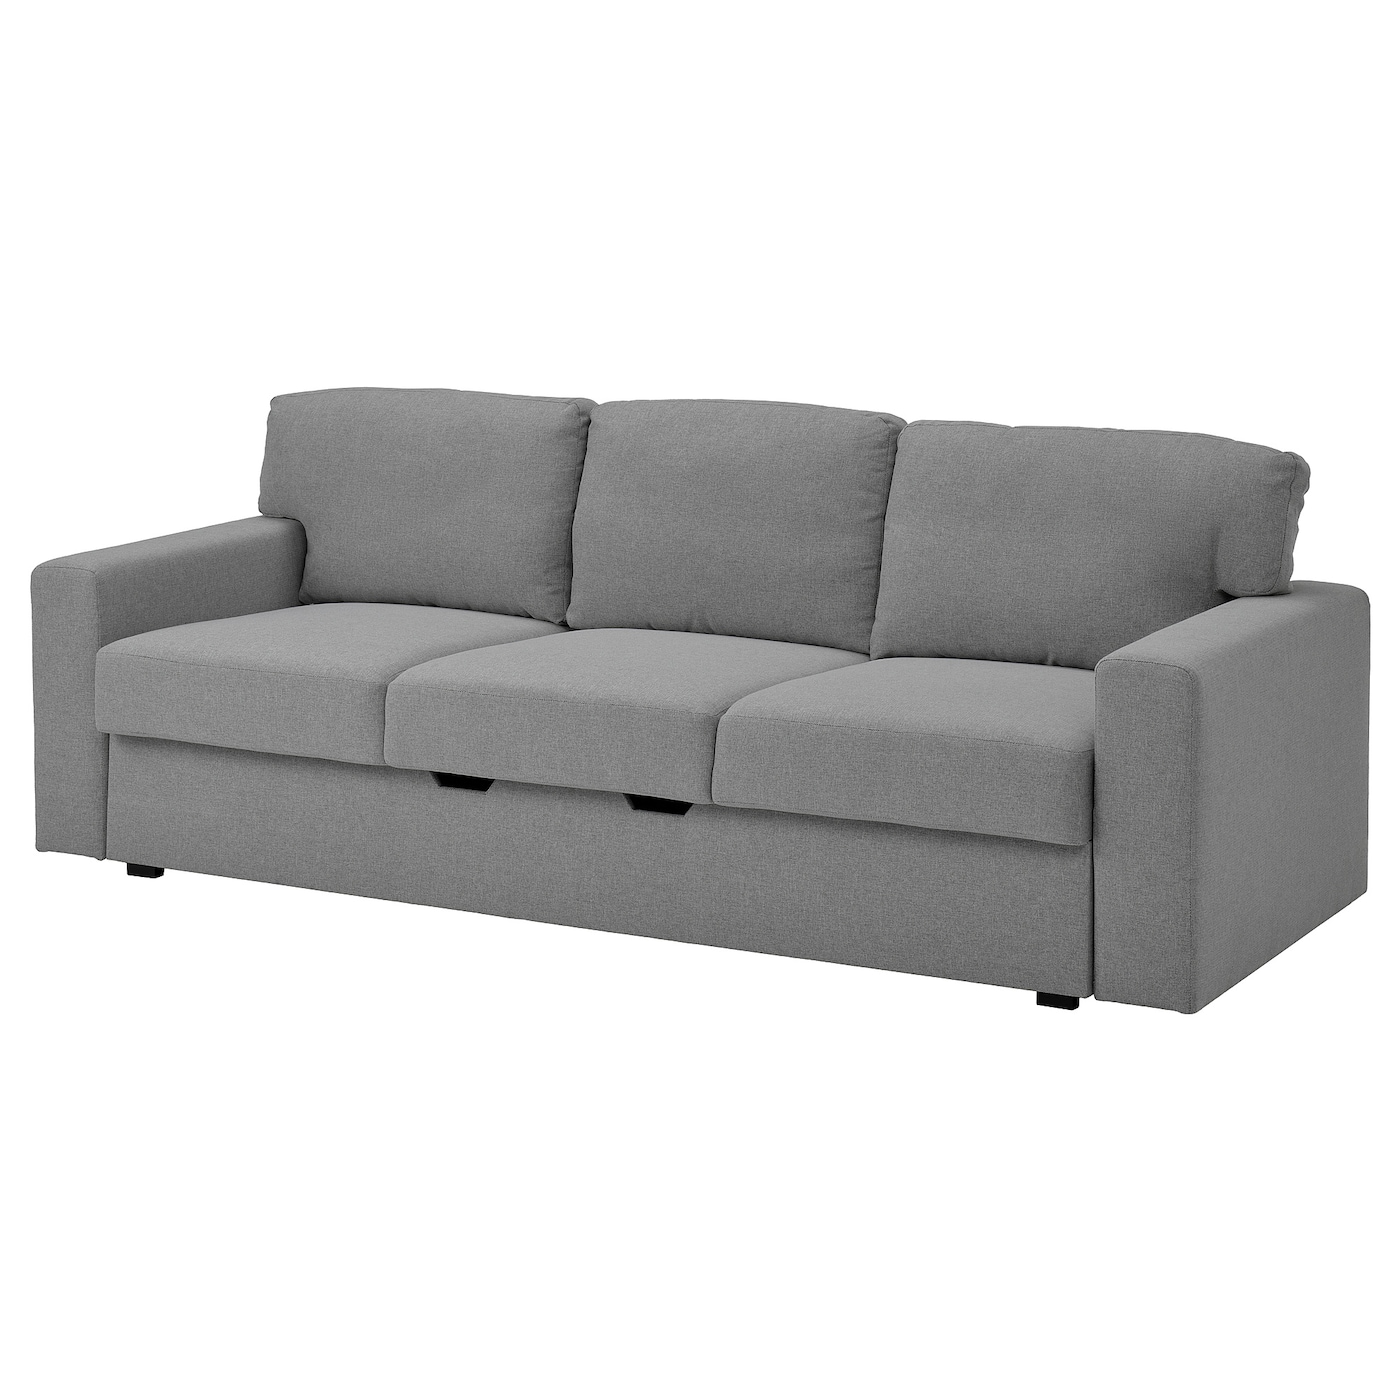 БОРСЛОВ 3-местный диван-кровать, Тибблби бежевый/серый BÅRSLÖV IKEA